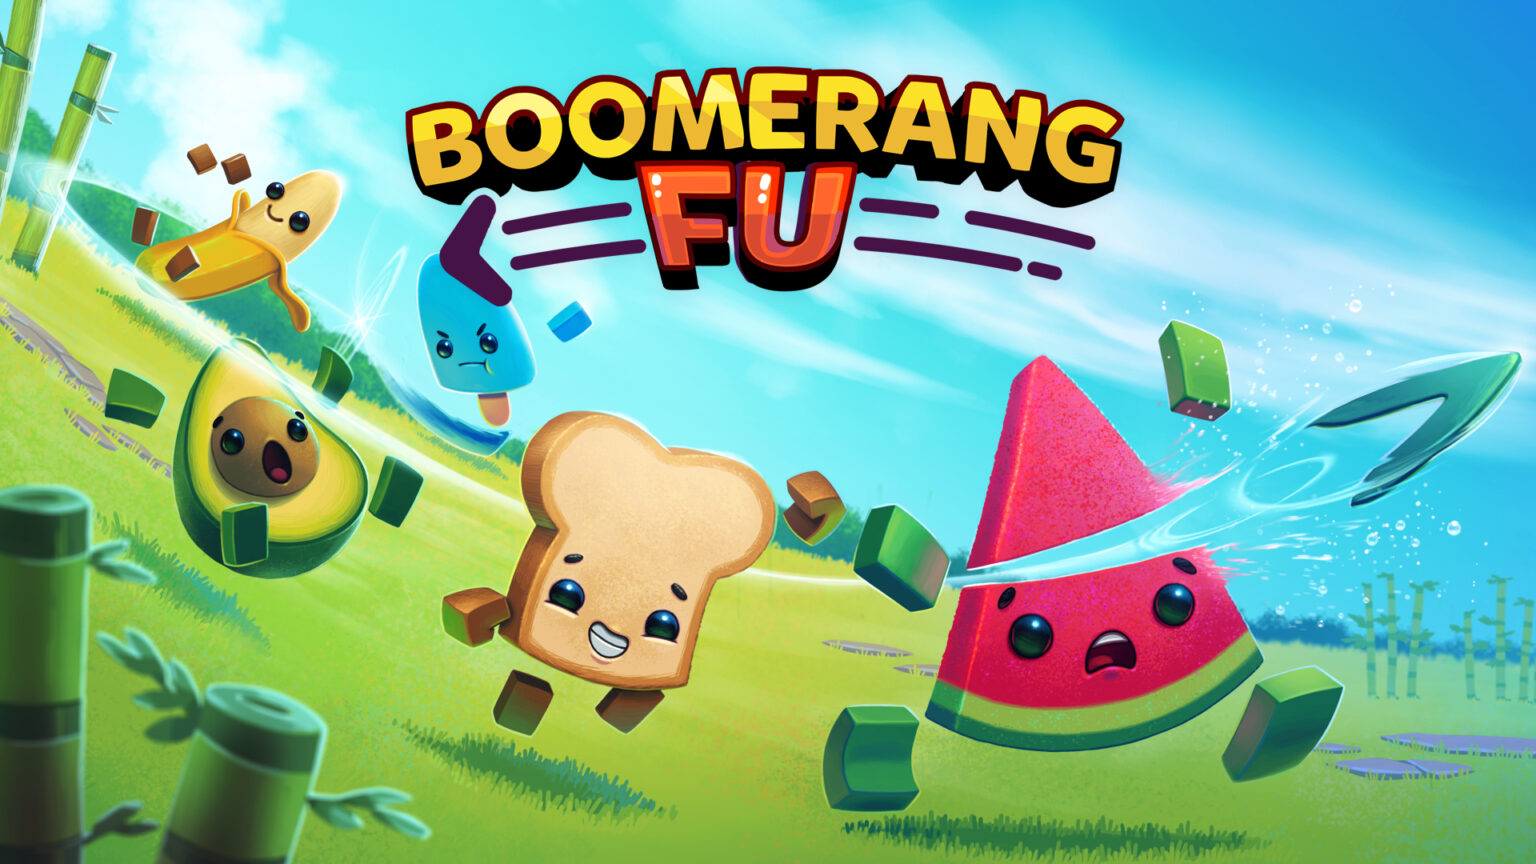 boomerang characters